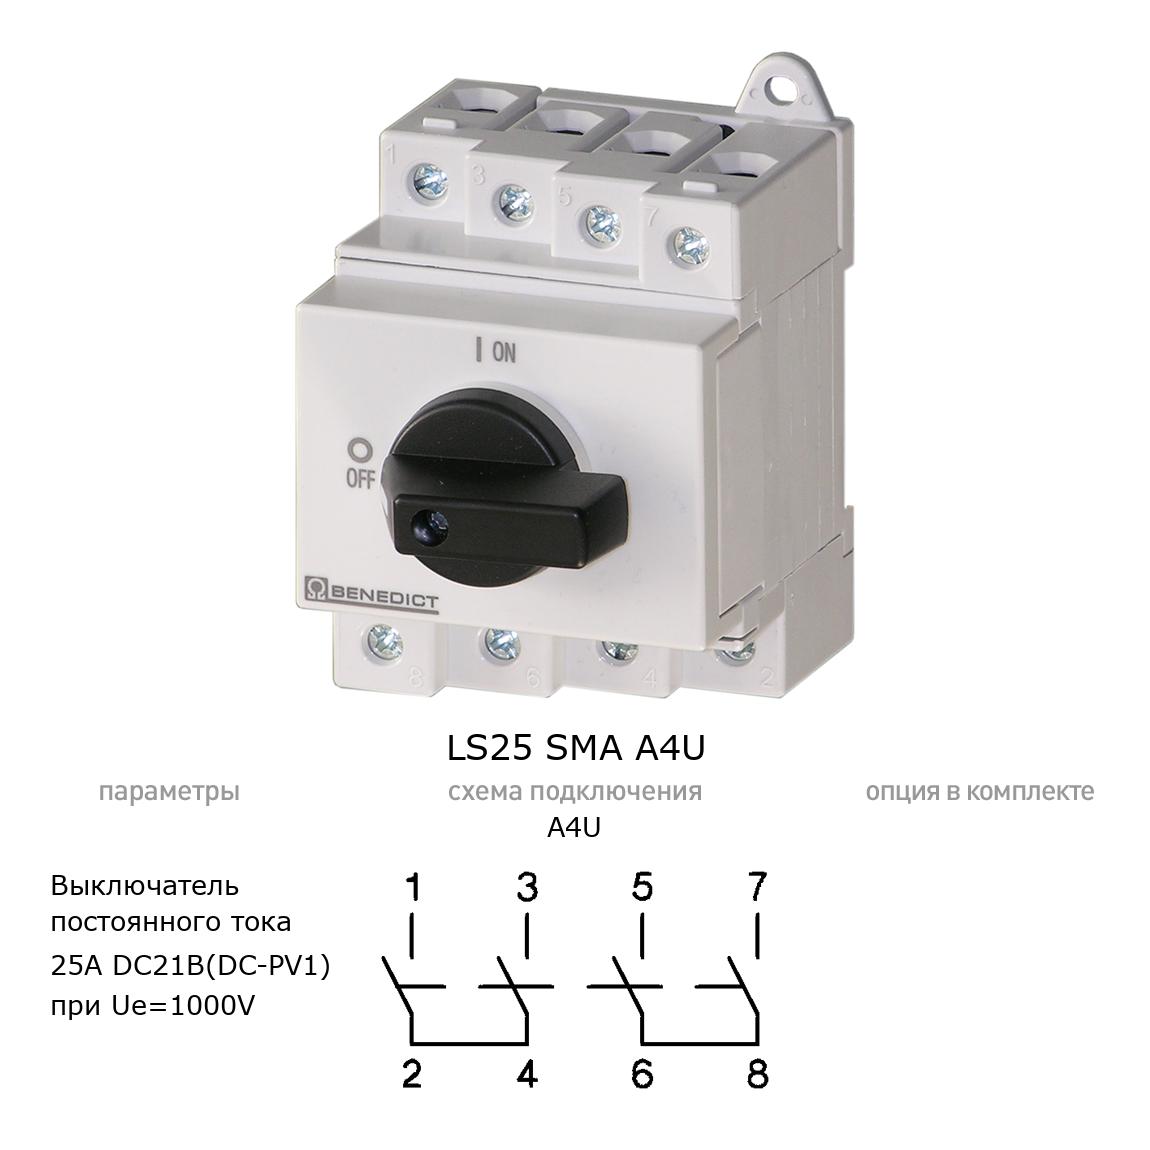 Кулачковый переключатель для постоянного тока (DC) LS25 SMA A4U BENEDICT